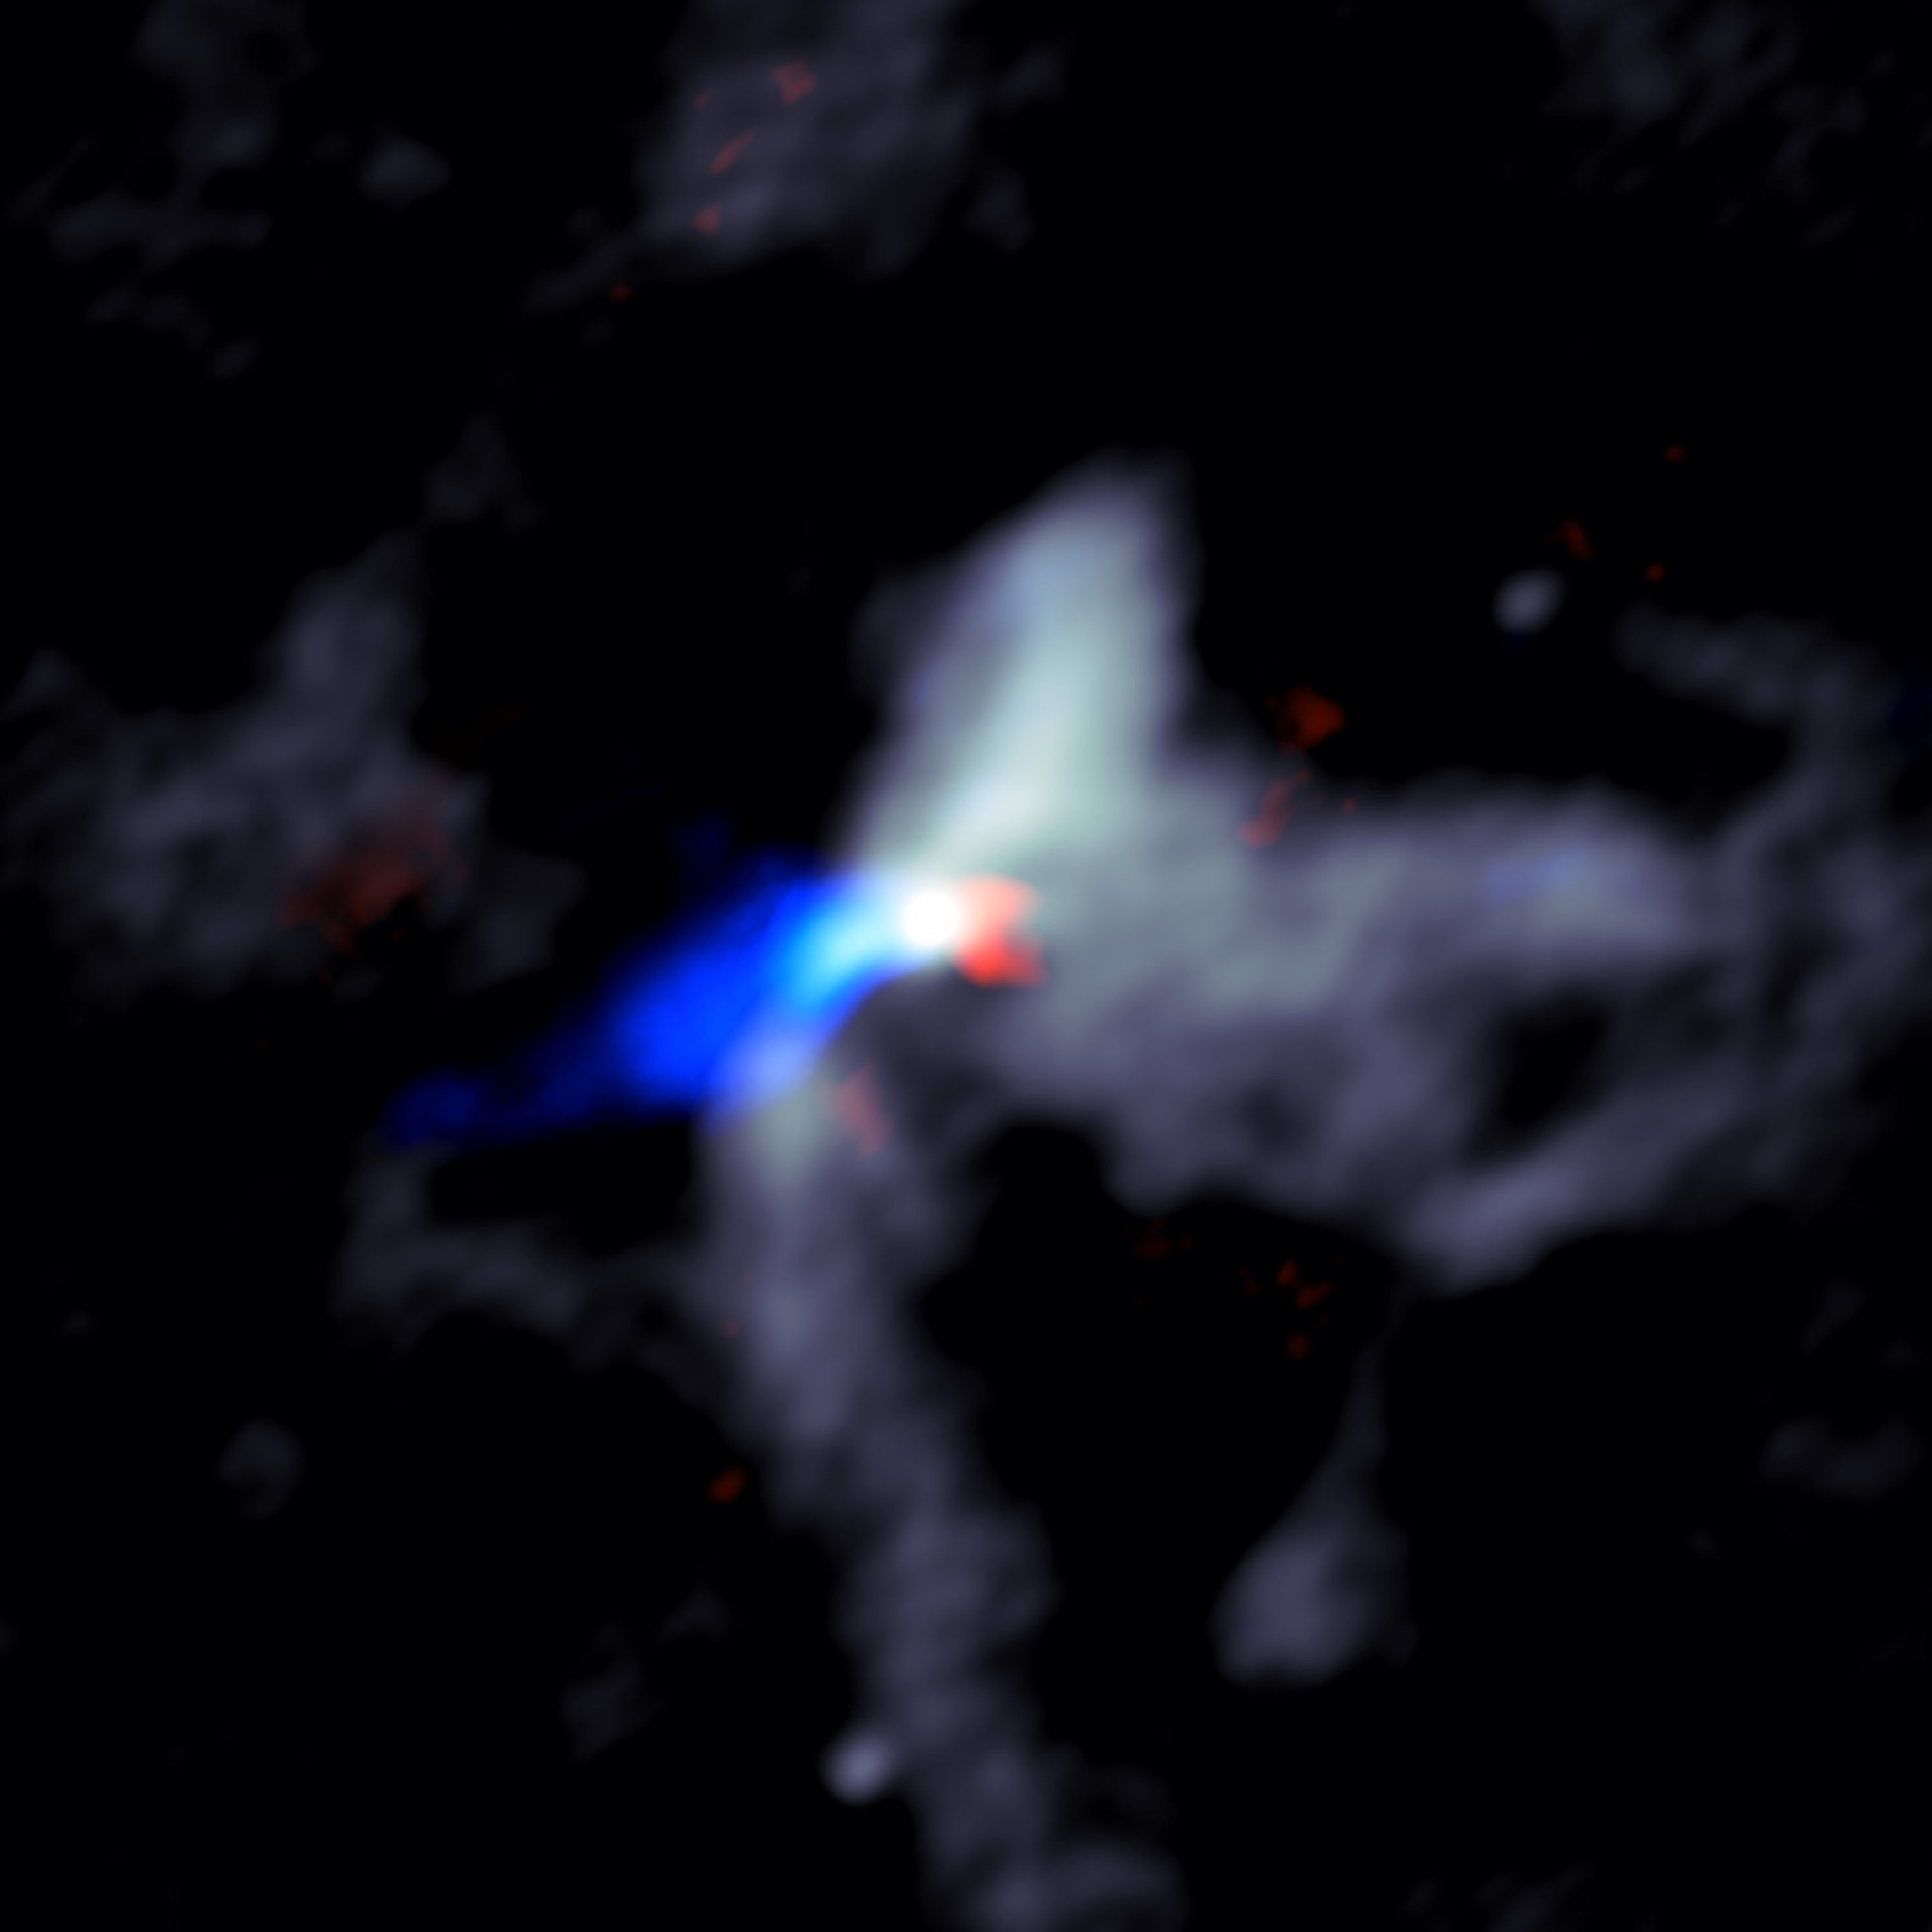 Imagen de ALMA de la caótica escena alrededor de una enorme protoestrella joven, en este caso llamada W51e8. El gris muestra polvo cerca de la estrella, mientras que el rojo y el azul indican material en los chorros que se mueven rápidamente hacia afuera de la estrella. El rojo muestra material alejándose de la Tierra y material azul moviéndose hacia la Tierra. Crédito: Goddi, Ginsburg, et al., Sophia Dagnello, NRAO / AUI / NSF.